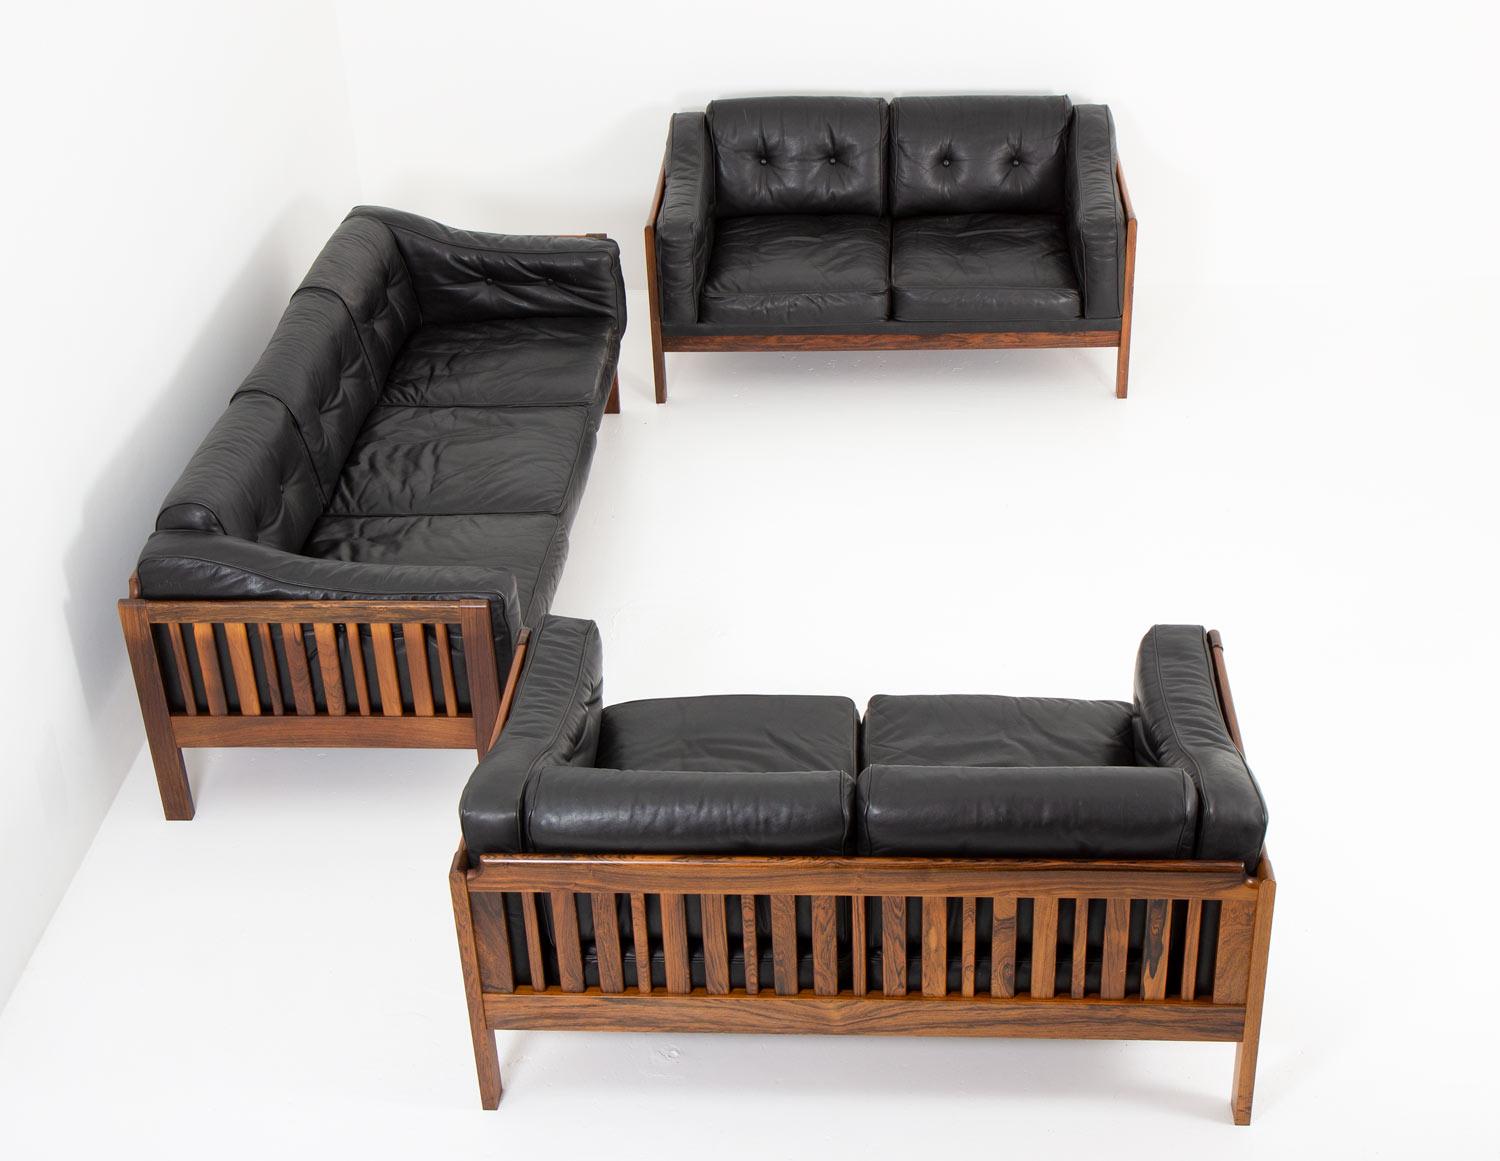 Canapés de qualité supérieure conçus par Ingvar Stockum pour Futura Möbler en 1965. Ce groupe comprend deux sièges à deux places et un siège à trois places.
Le canapé 